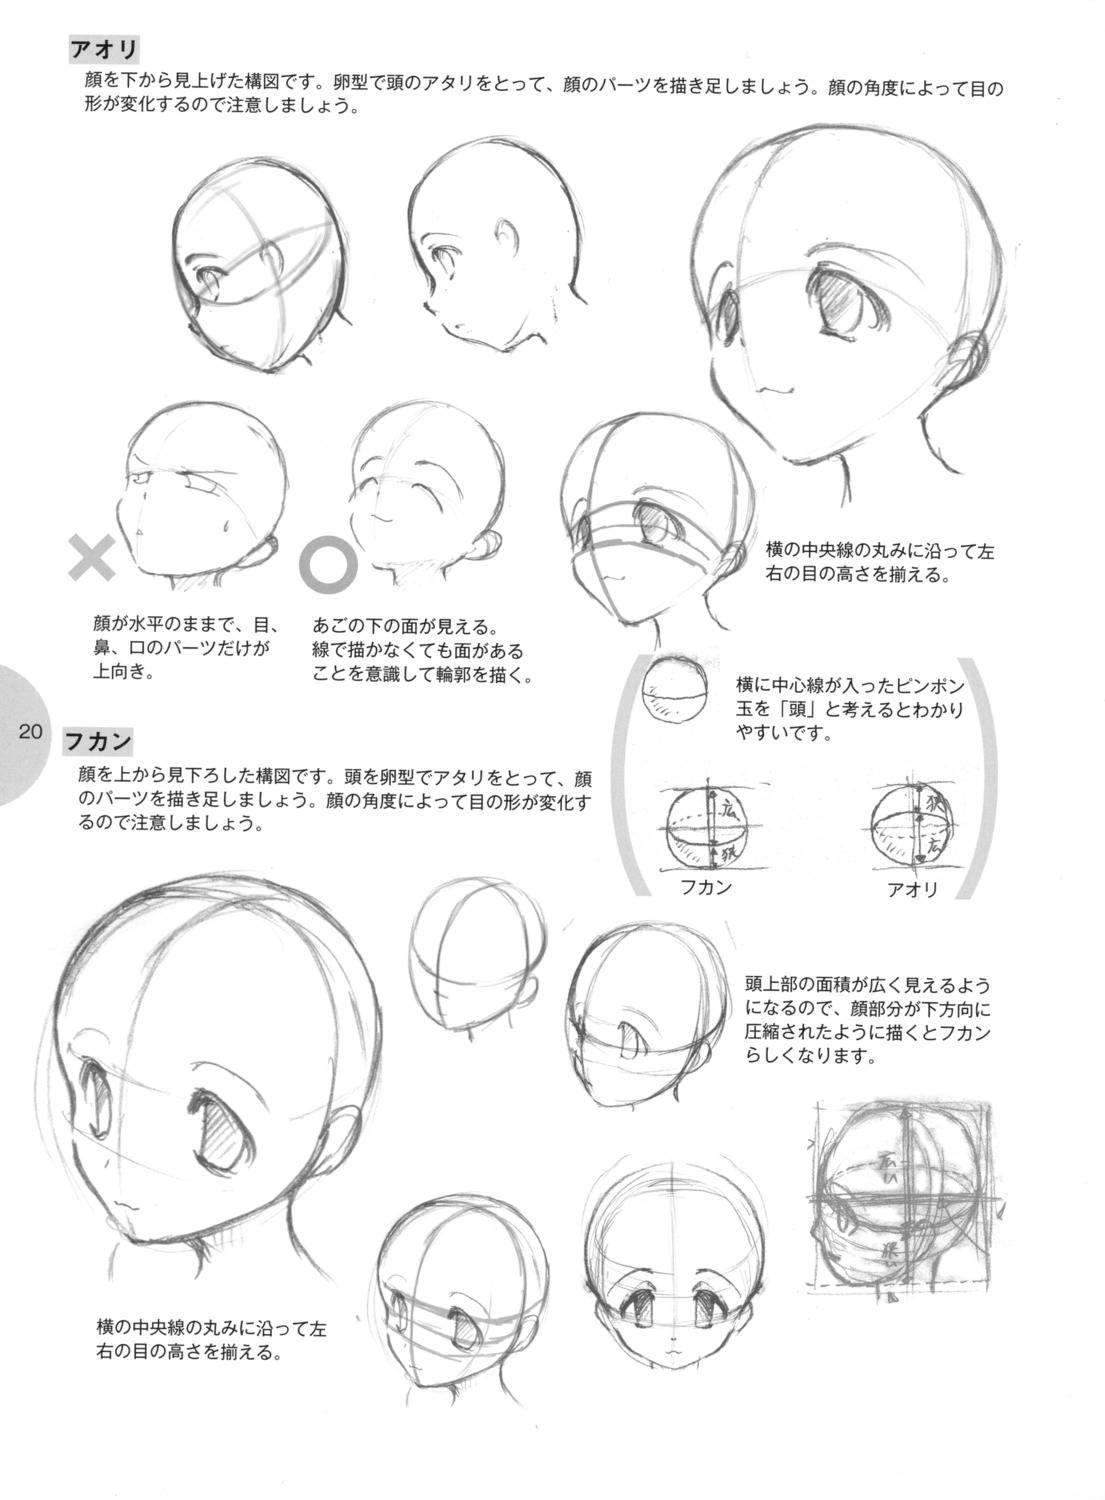 Пропорции головы аниме для рисования